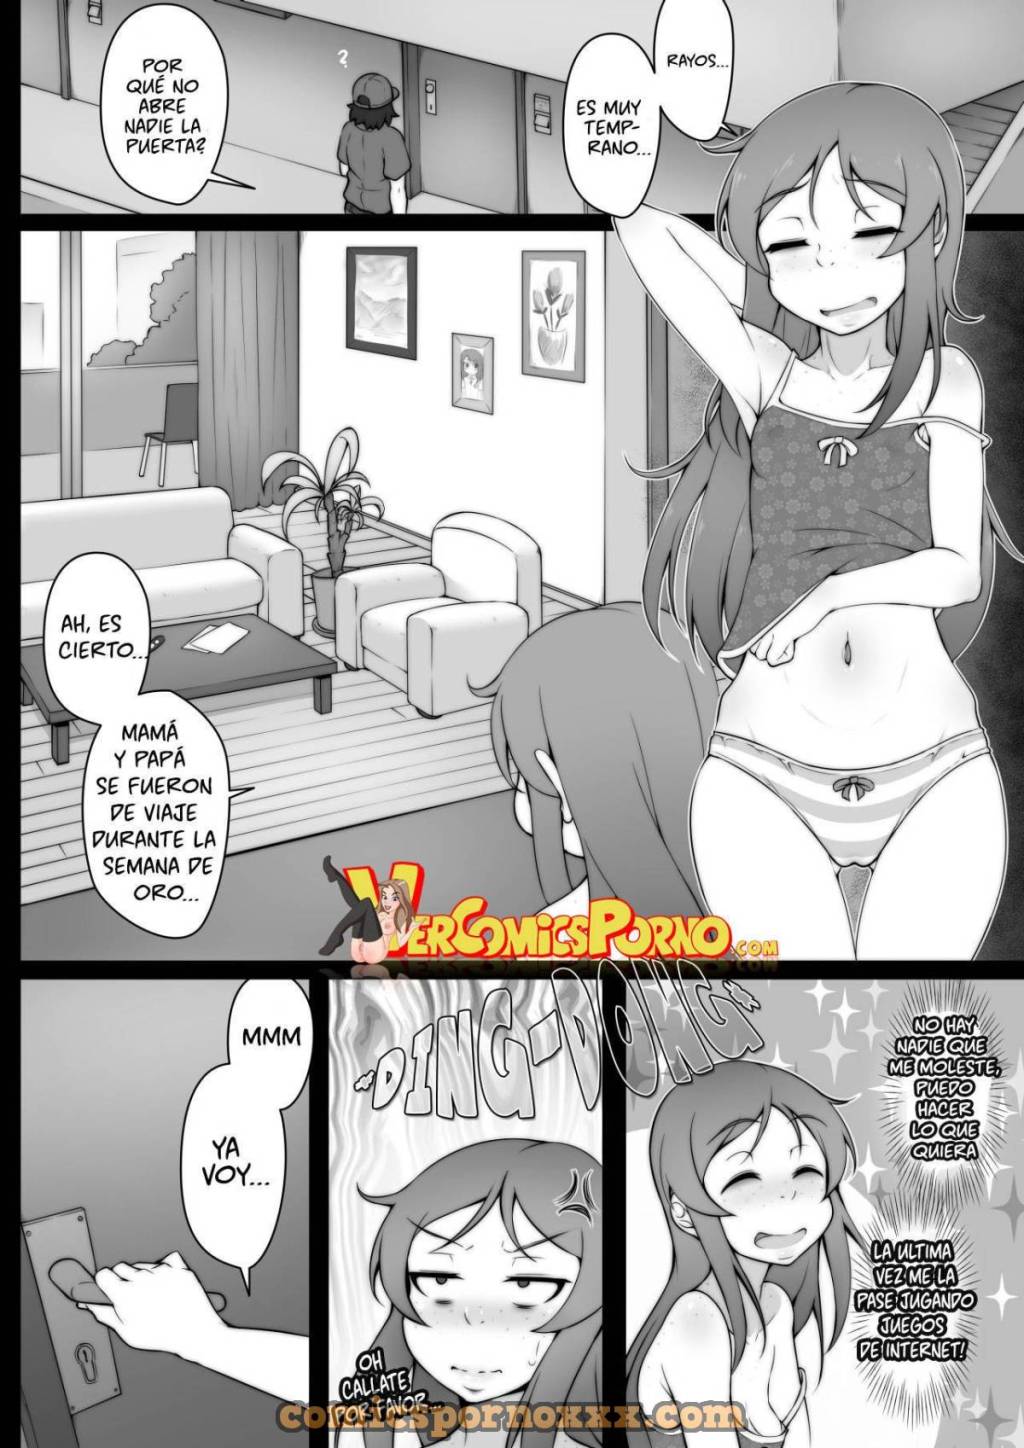 Golden Week (Como ser una Puta en una Semana) - 3 - Comics Porno - Hentai Manga - Cartoon XXX